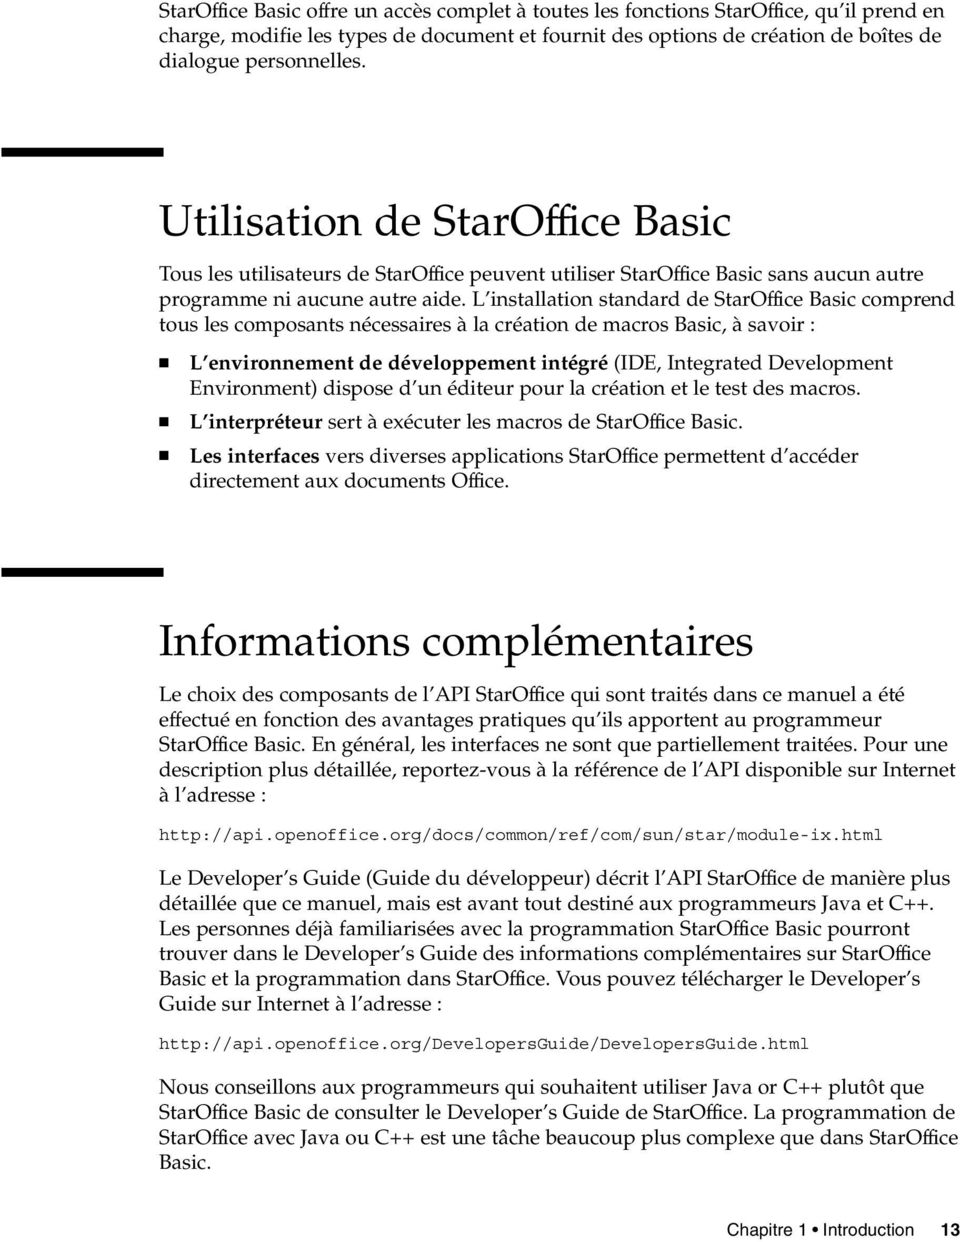 L installation standard de StarOffice Basic comprend tous les composants nécessaires à la création de macros Basic, à savoir : L environnement de développement intégré (IDE, Integrated Development